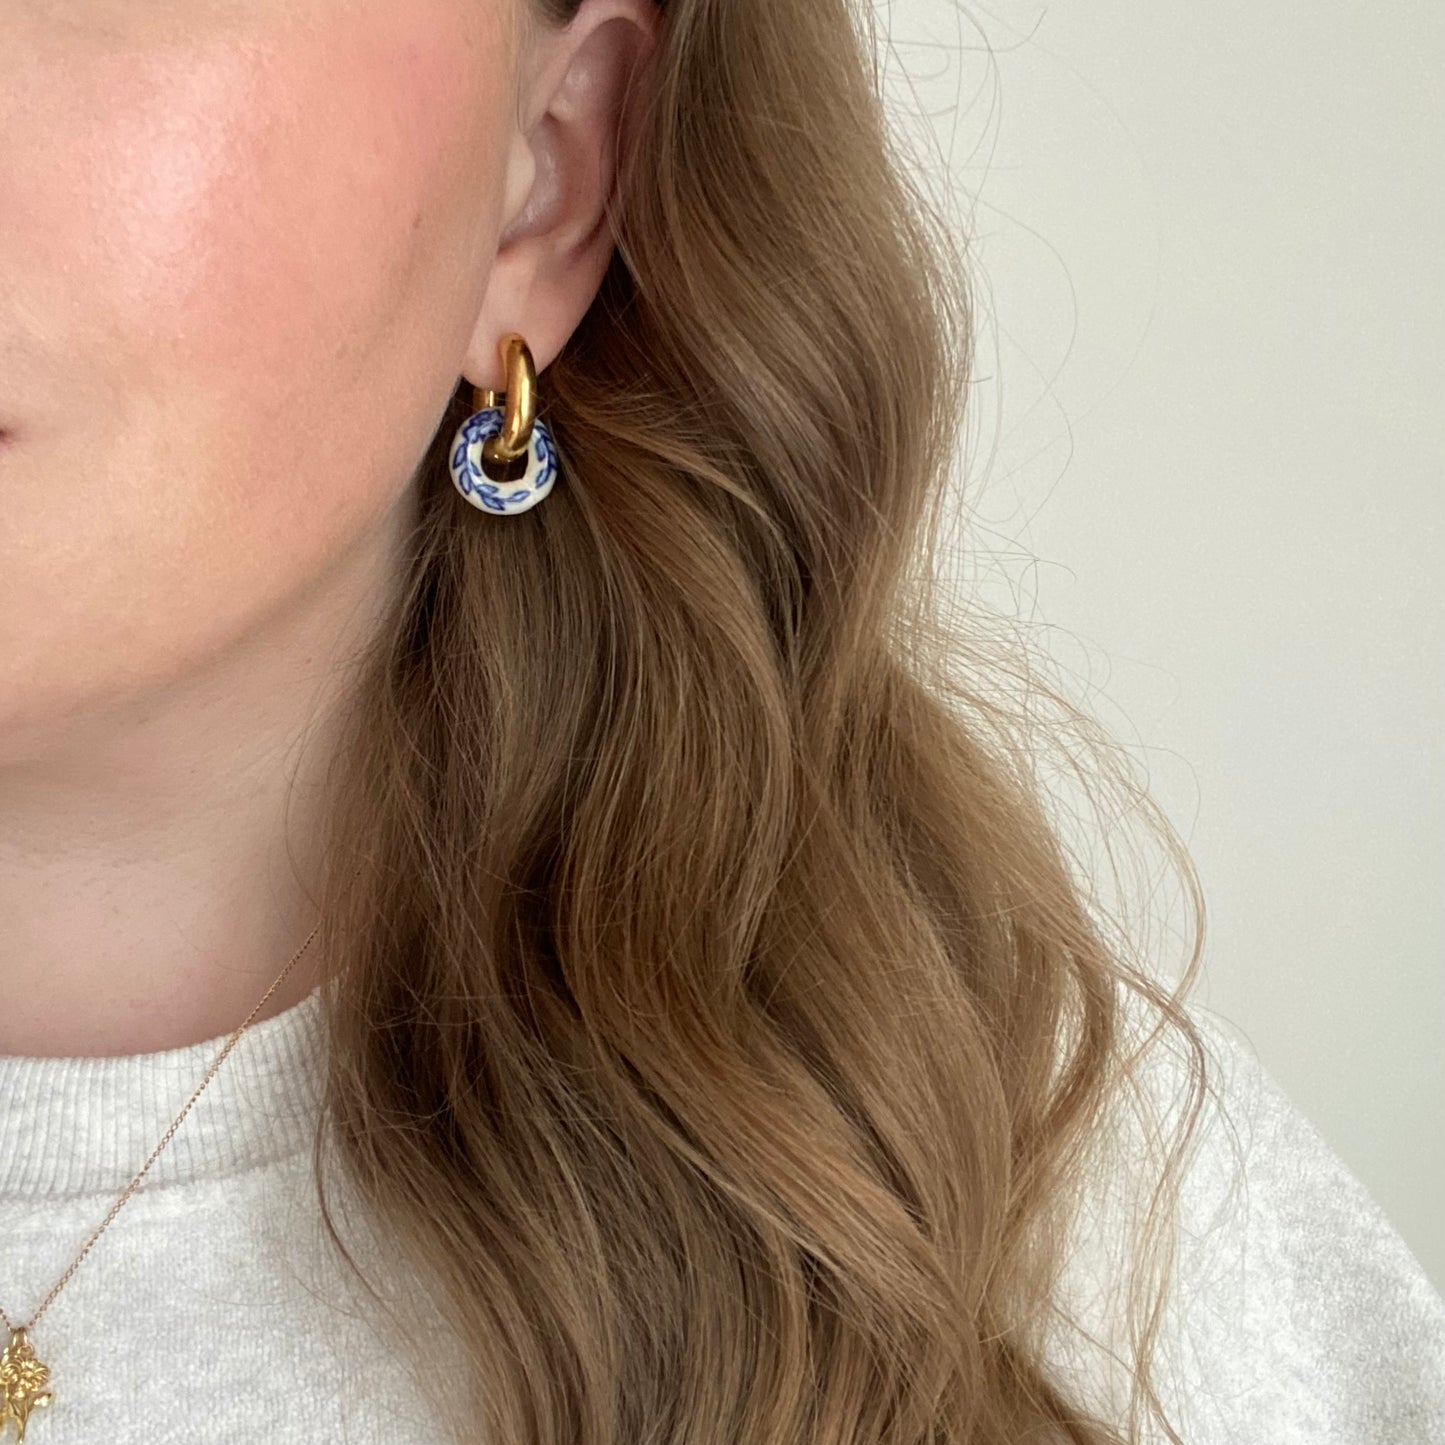 Burleigh — 2 in 1 earrings